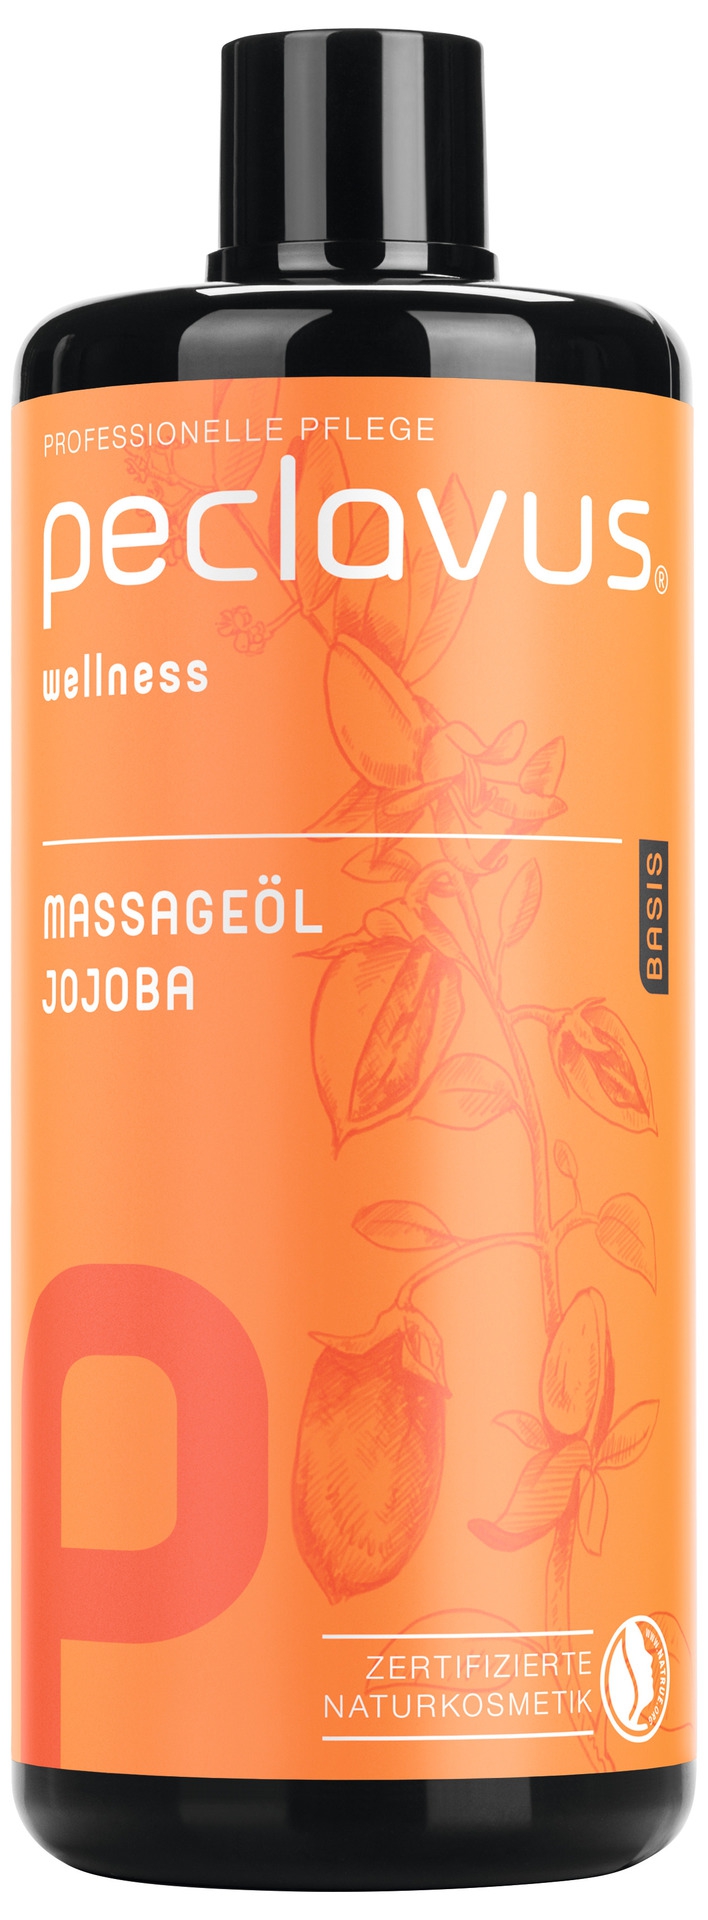 PECLAVUS Massageöl Jojoba 500 ml | Basis